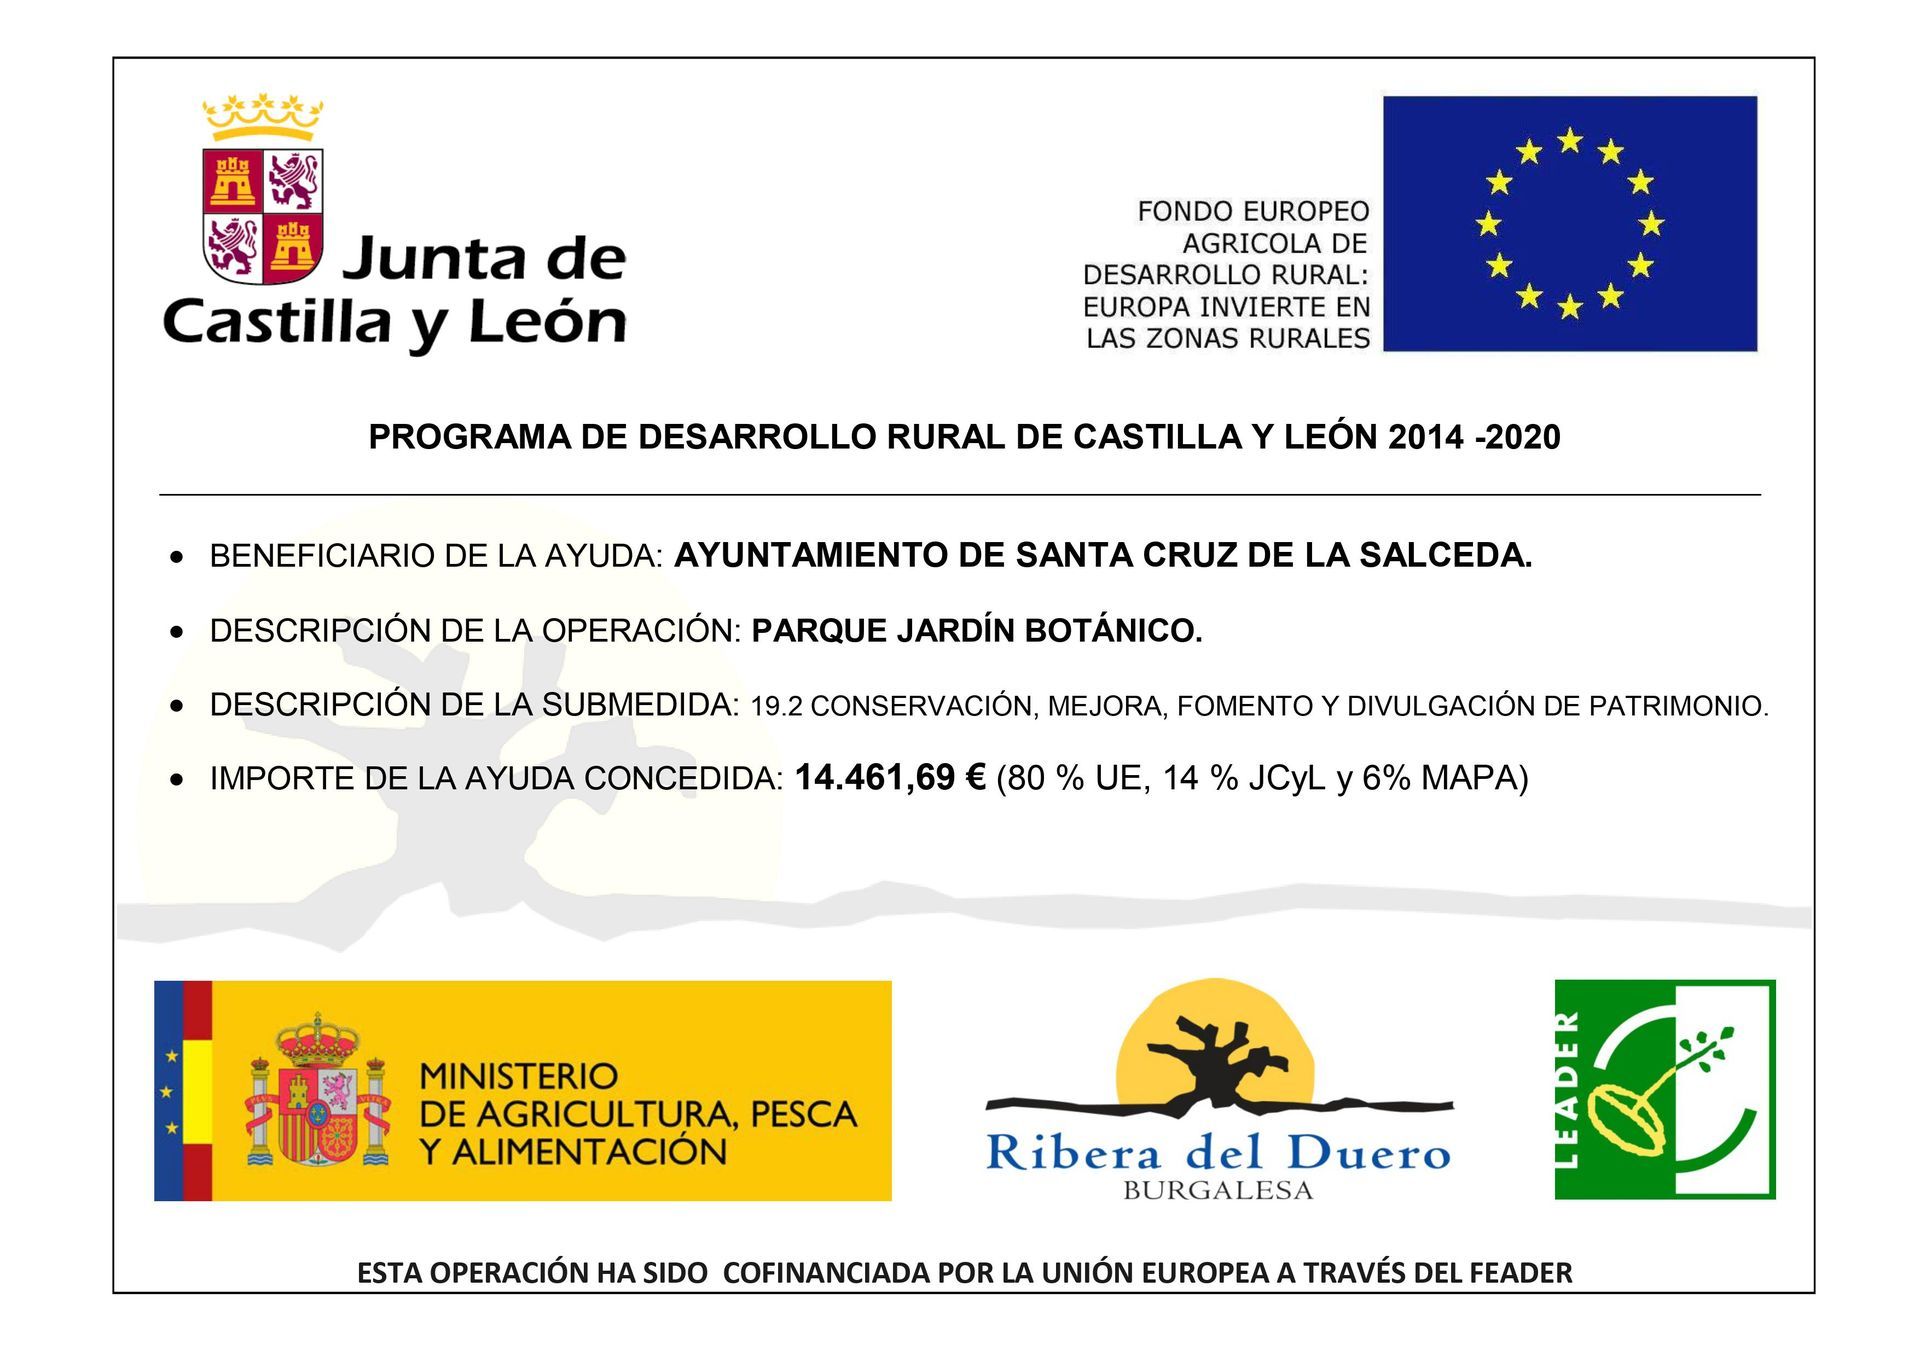 Ayuda LEADER 2014-2020. A.D.R.I. Ribera del Duero Burgalesa para la creación de un parque jardín aromático, conforme al detalle de ayudas que se adjunta.